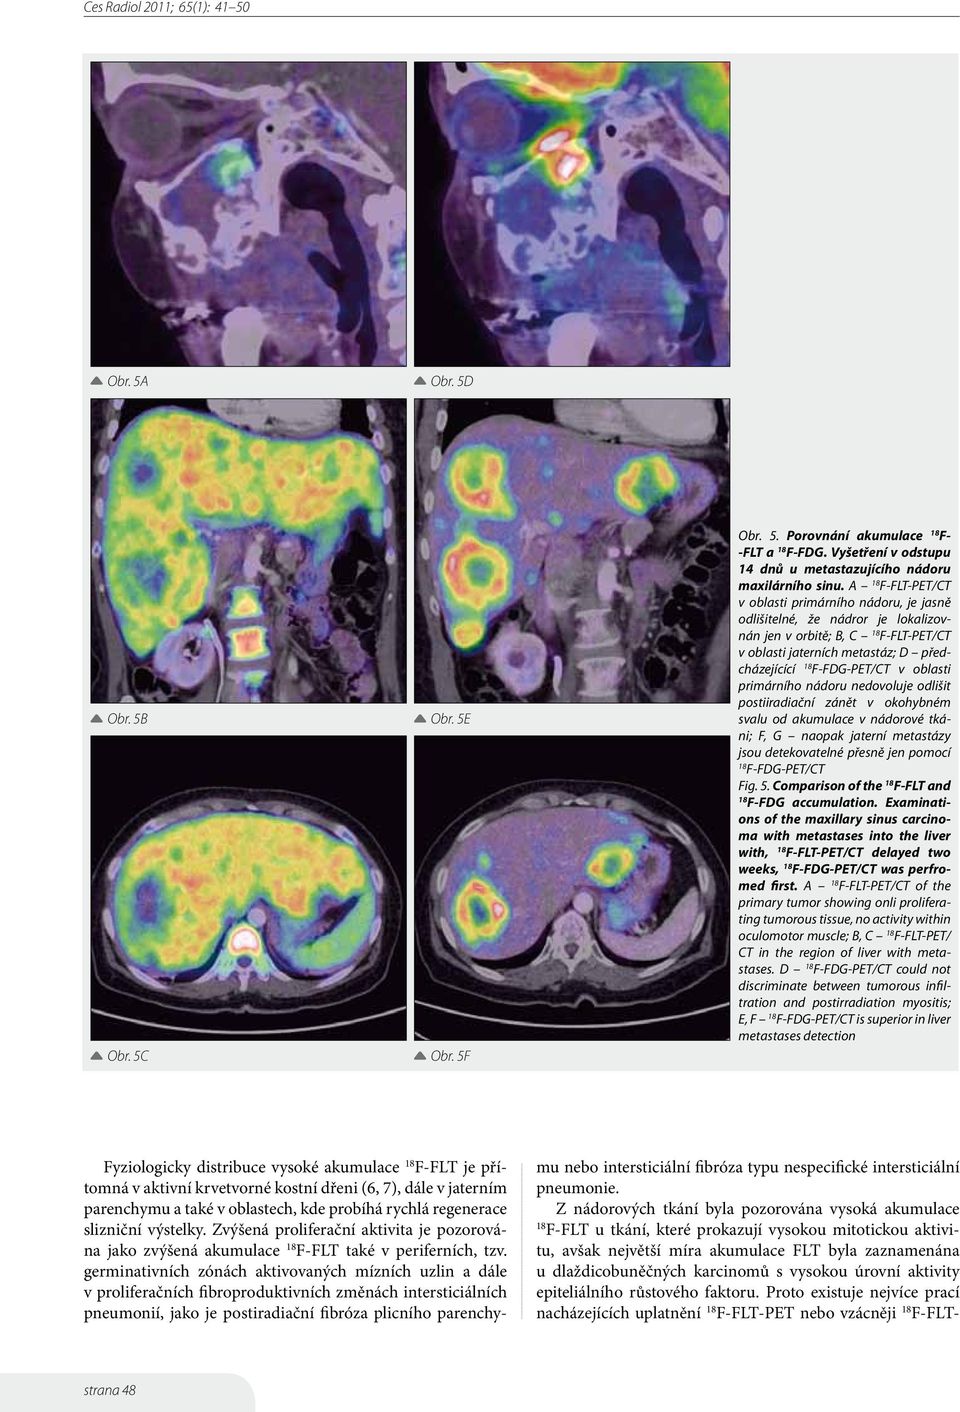 primárního nádoru nedovoluje odlišit postiiradiační zánět v okohybném svalu od akumulace v nádorové tkáni; F, G naopak jaterní metastázy jsou detekovatelné přesně jen pomocí F-FDG-PET/CT Fig. 5.